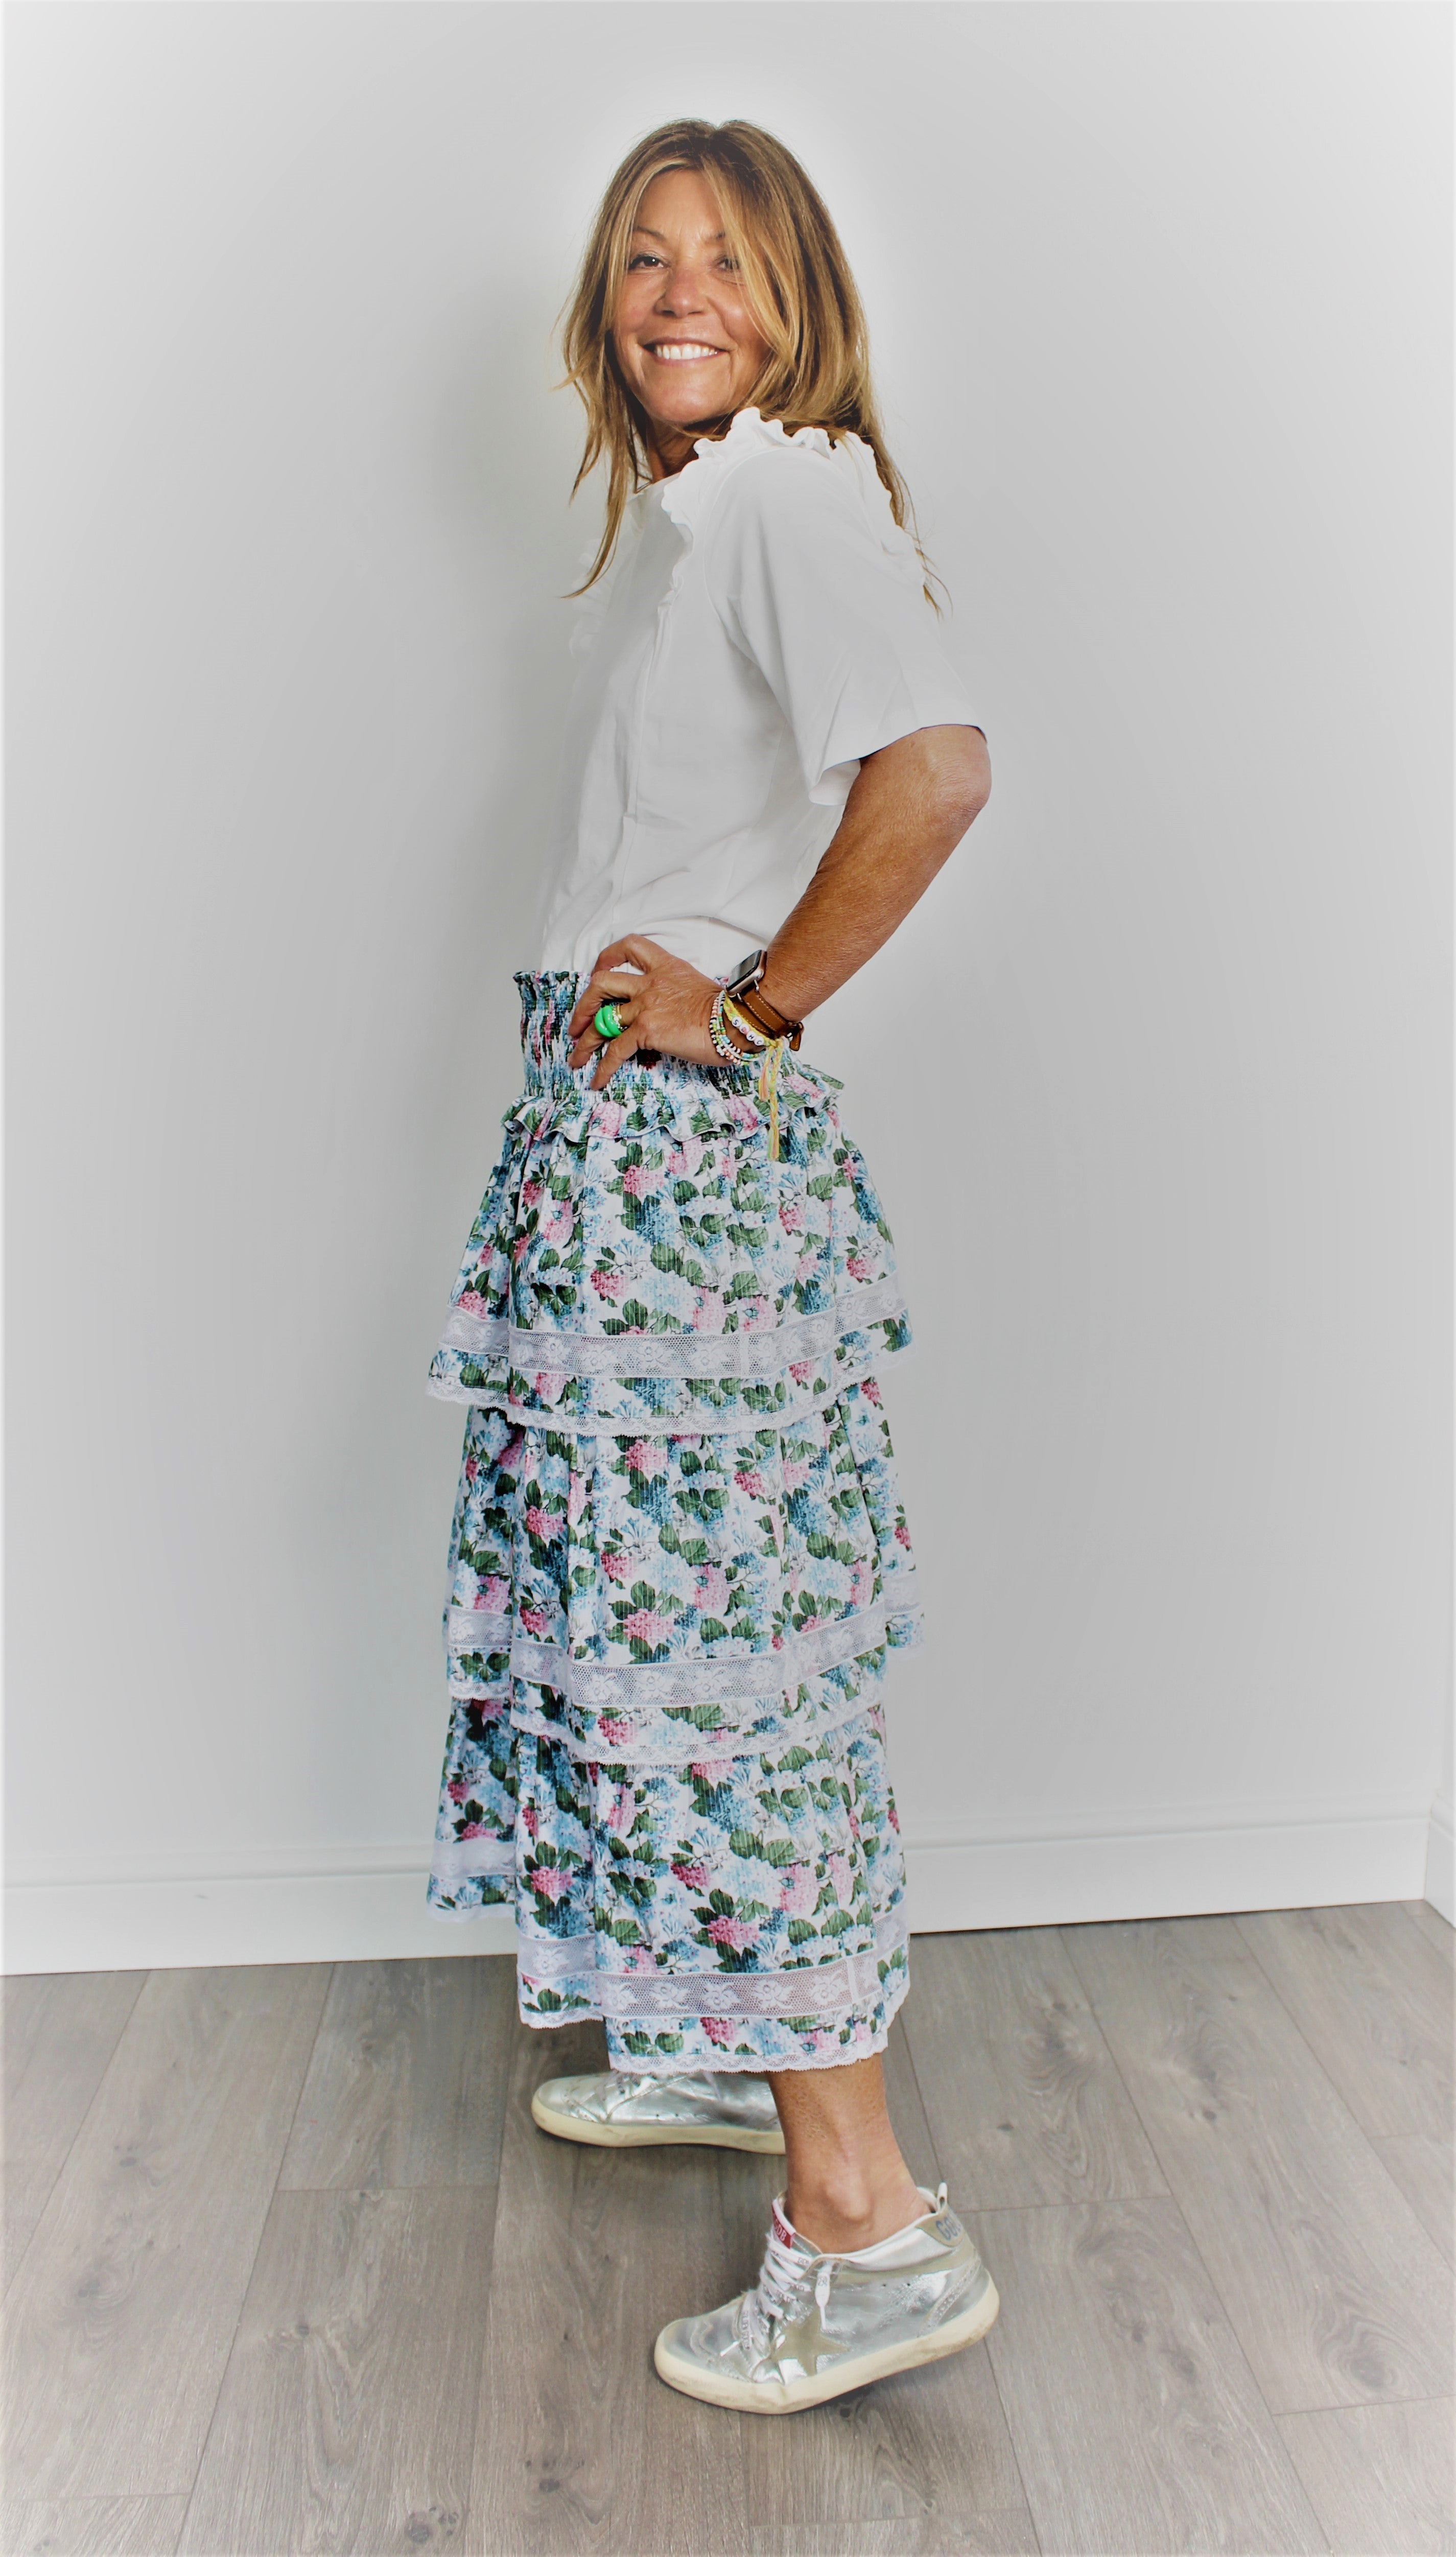 Loretta Caponi Flavia floral-print skirt